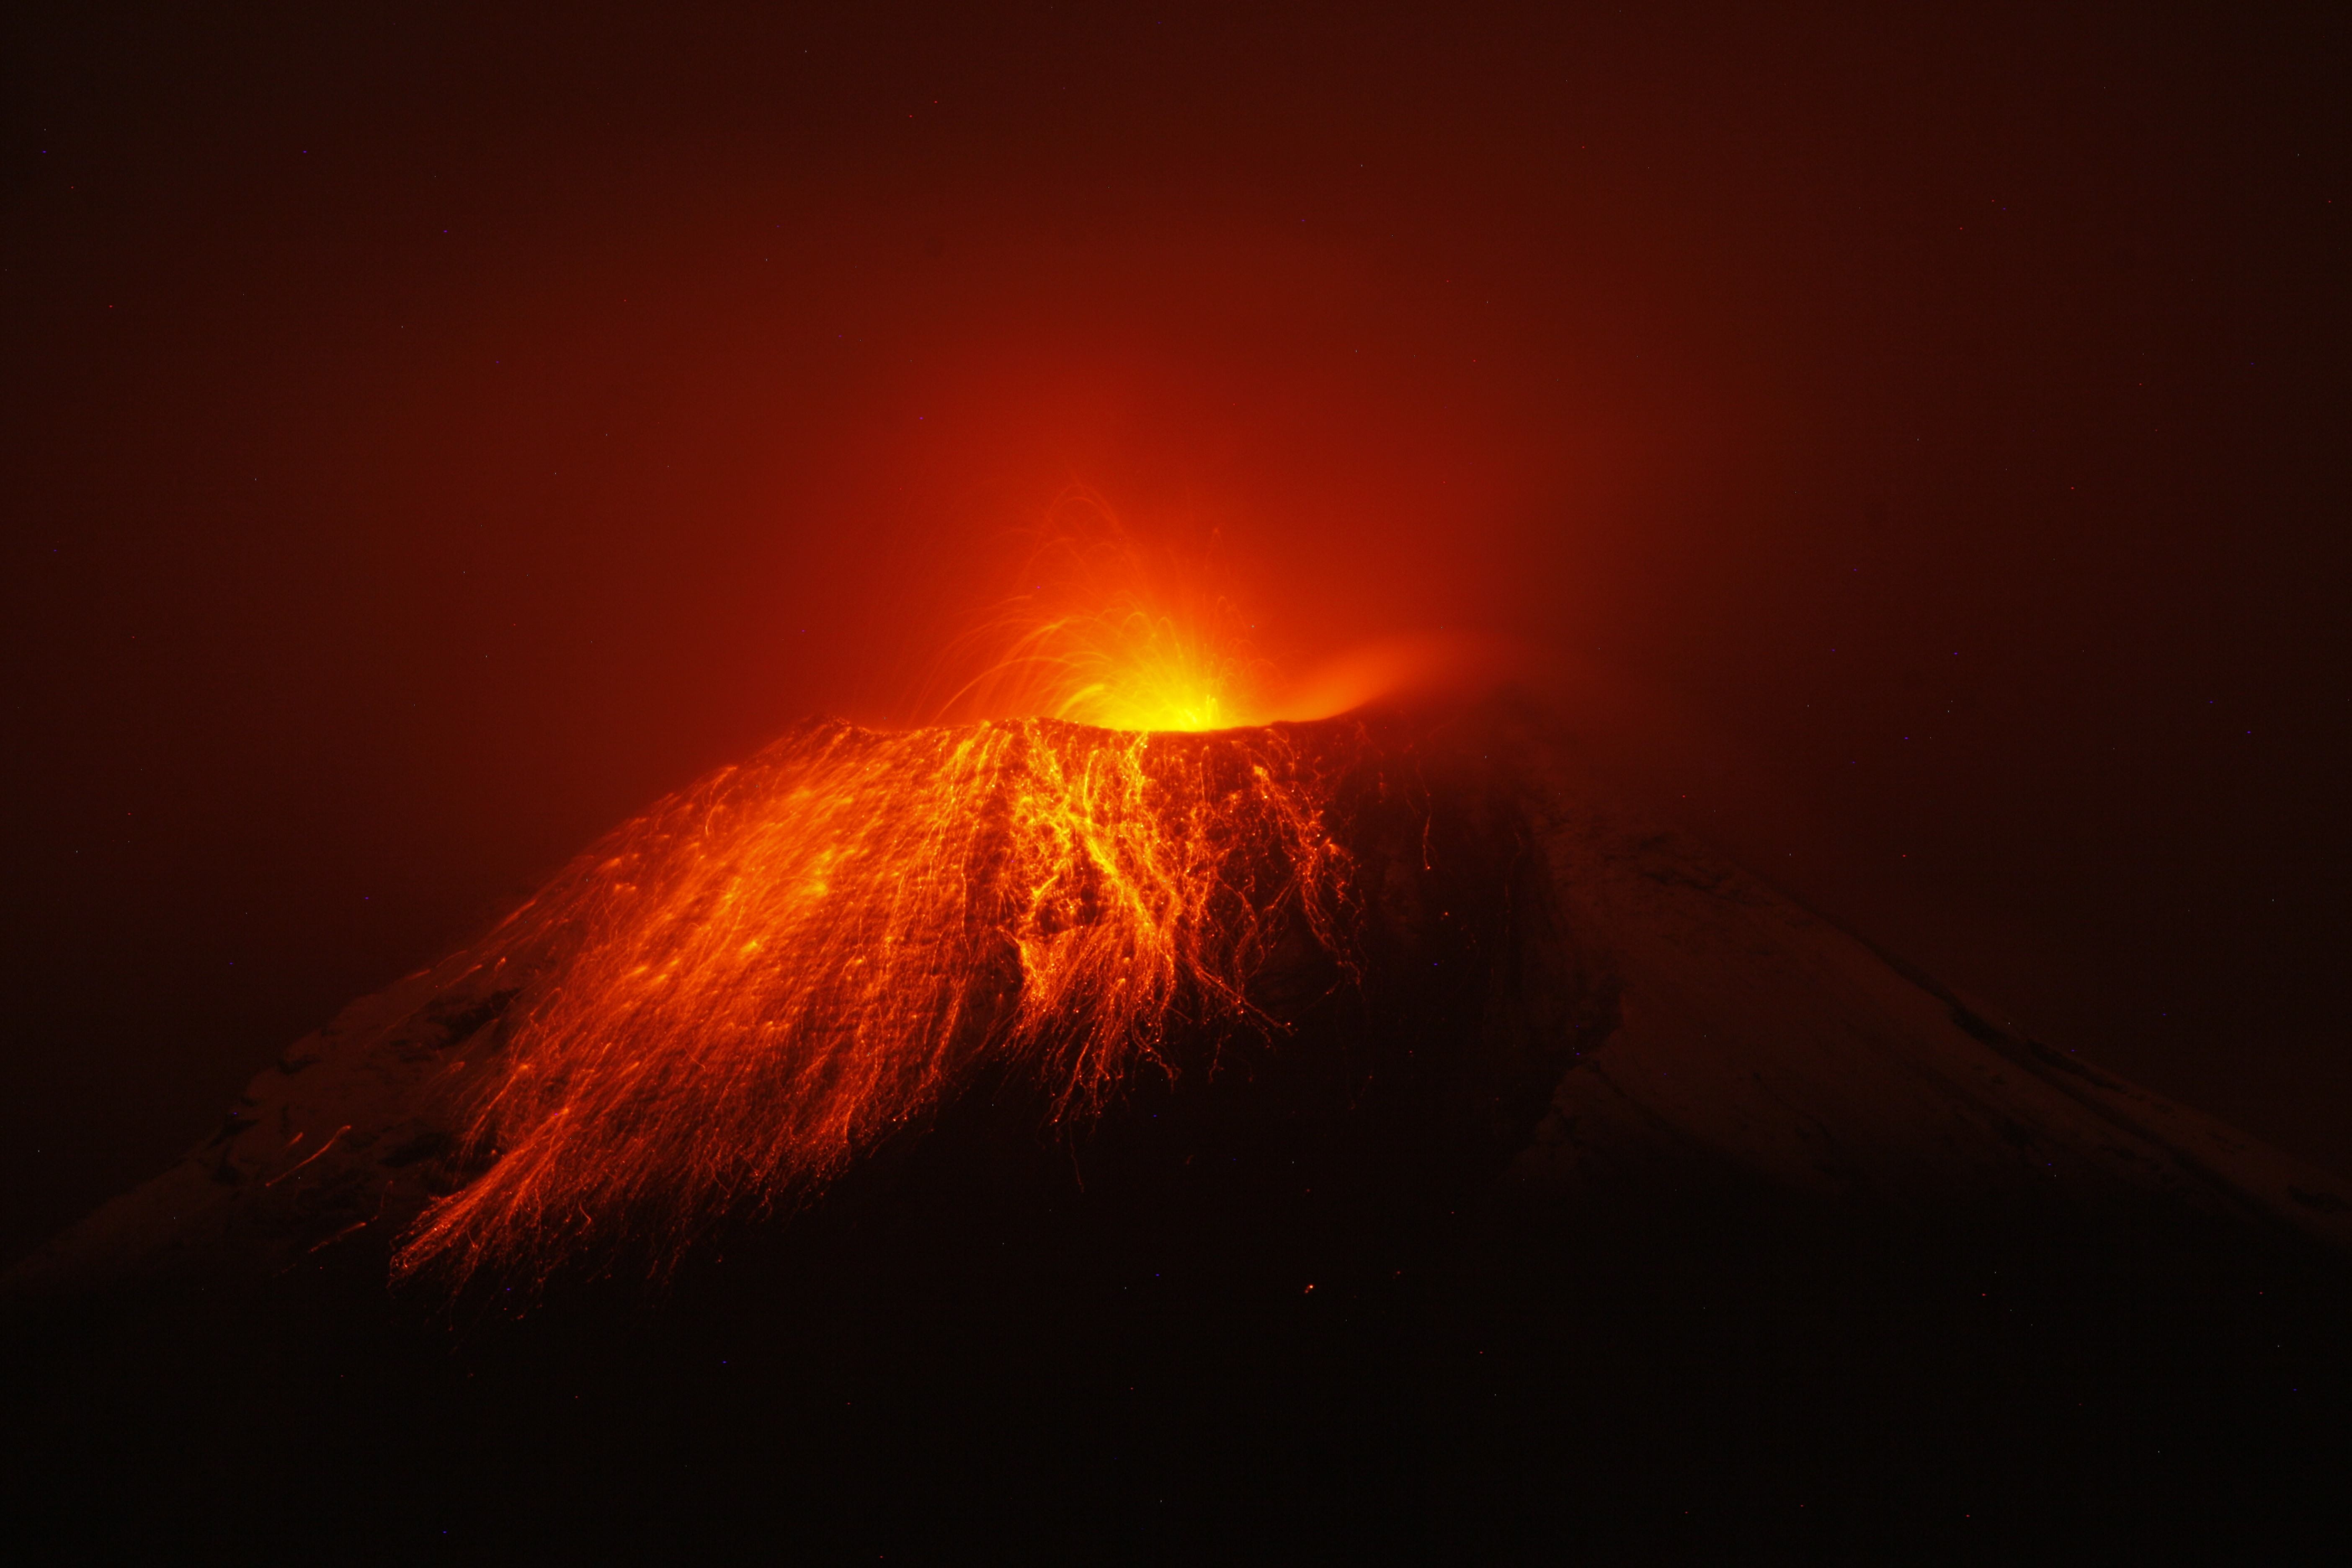 دانلود عکس فوران بزرگترین کوه آتشفشان با آتش سرخ و هولناک